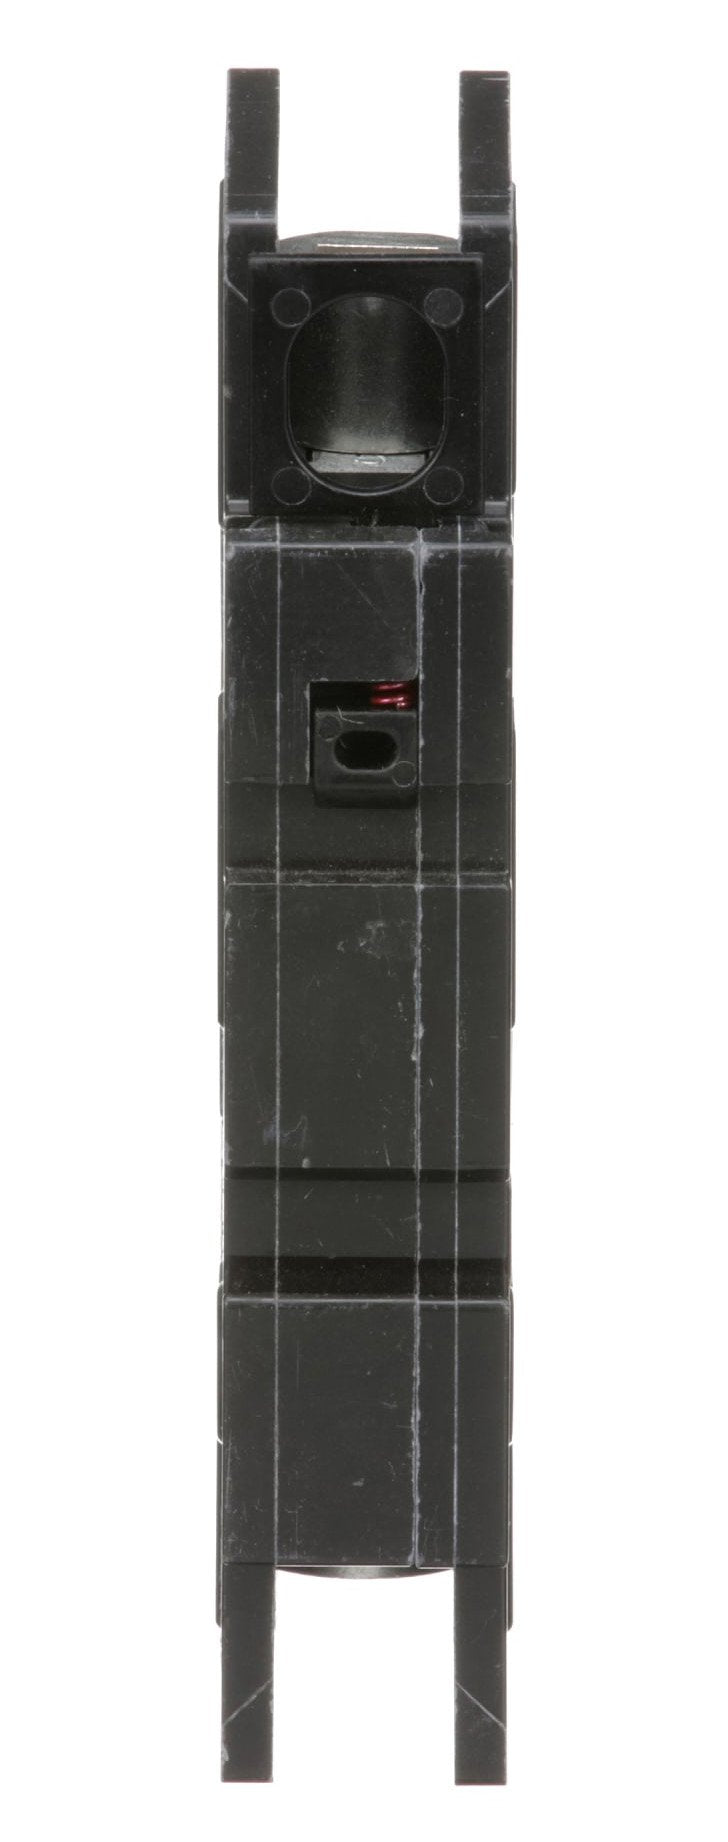 QOU140 - Square D - 40 Amp Circuit Breaker